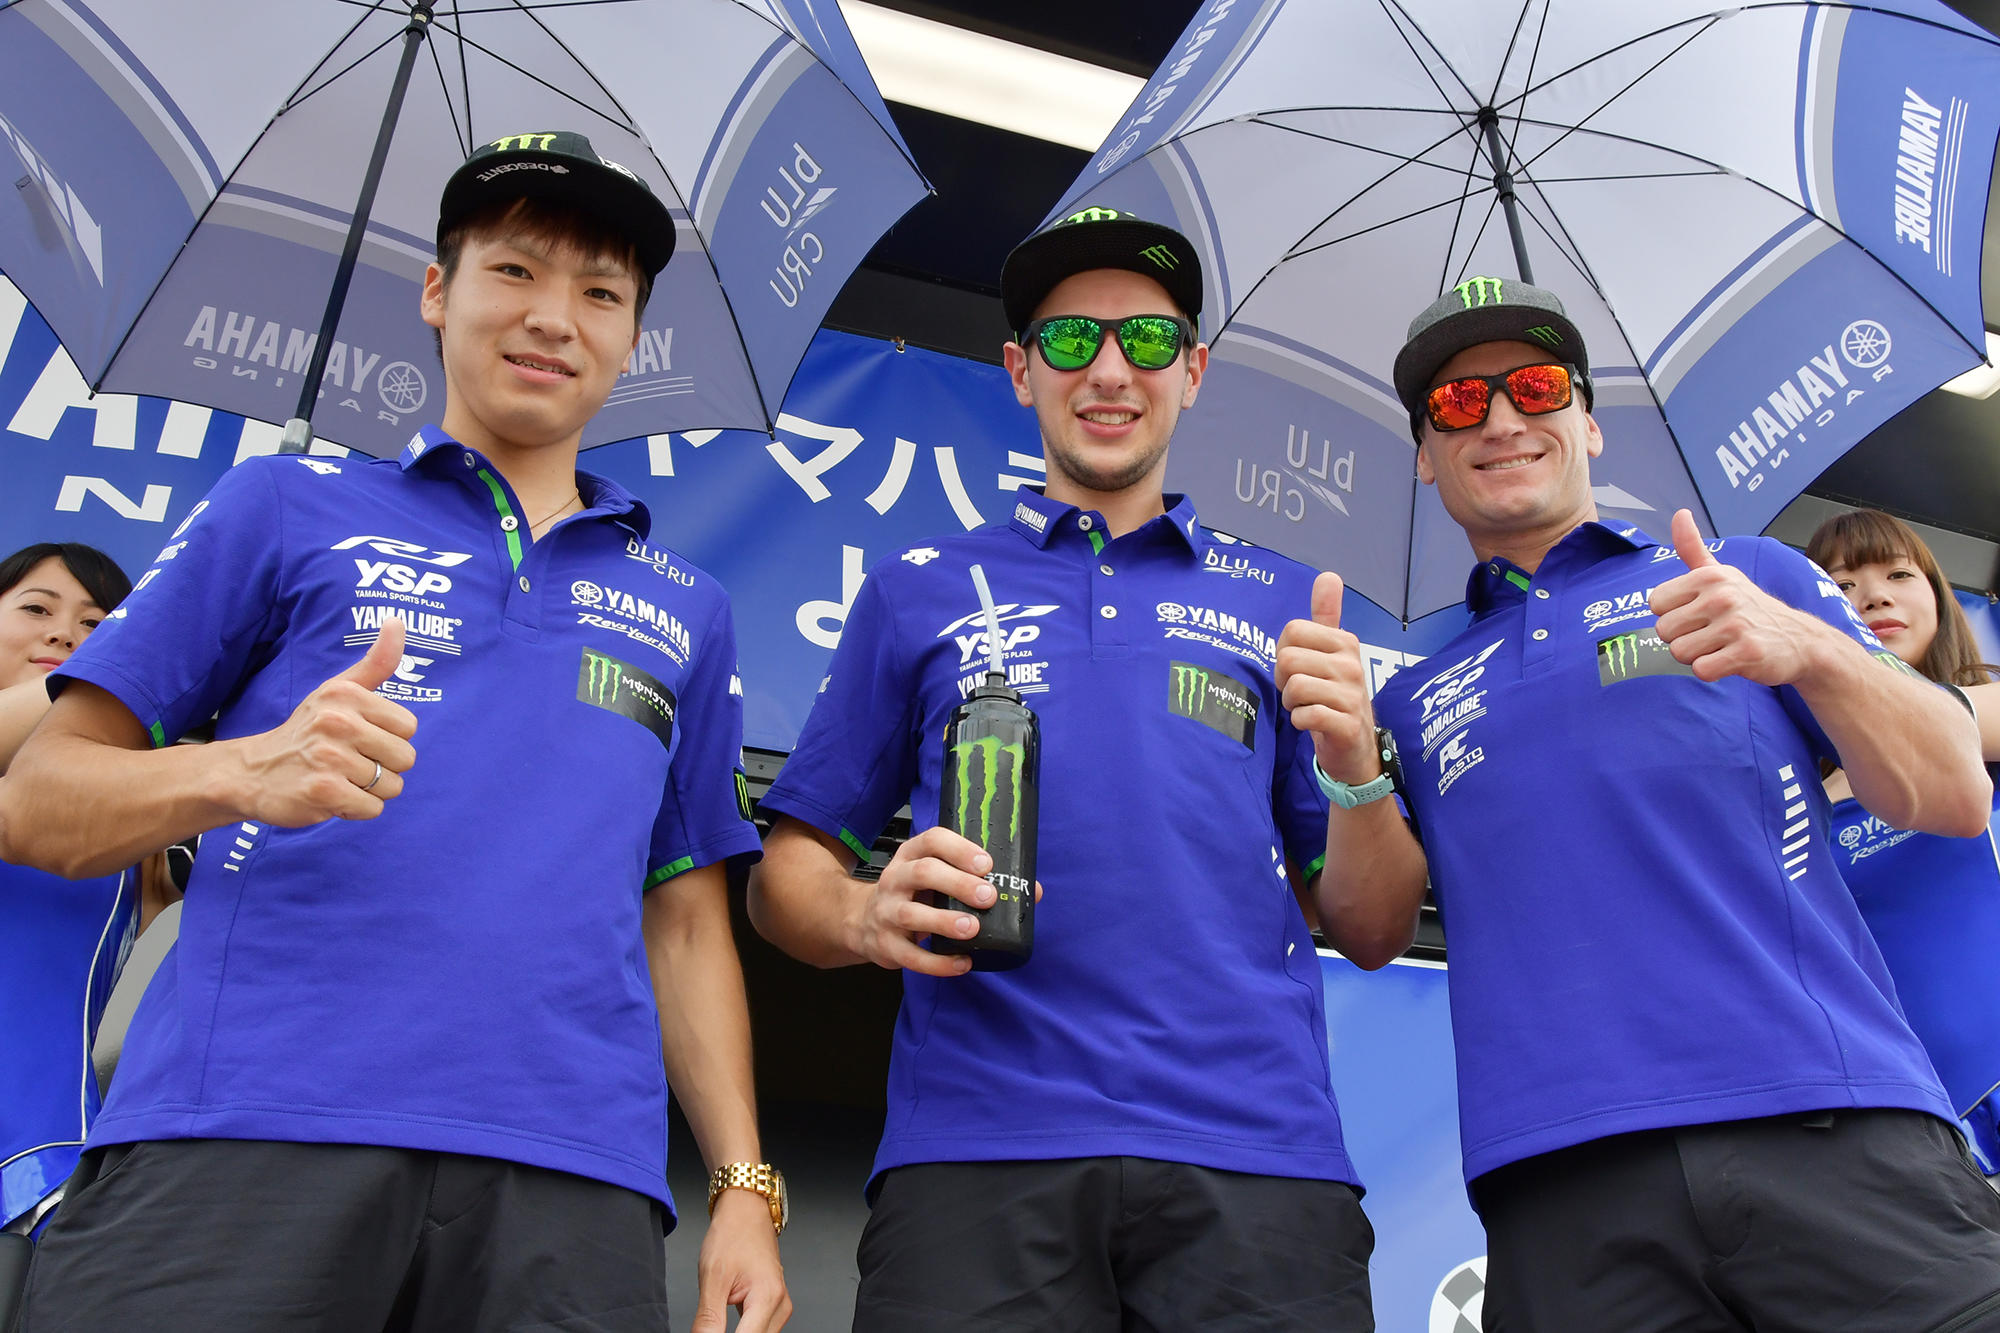 今年、全日本ロードレースで「YAMAHA FACTORY RACING TEAM」にステップアップした野左根航汰選手が、レギュラー参戦していることでも注目されている「ART Yamaha Official EWC Team」